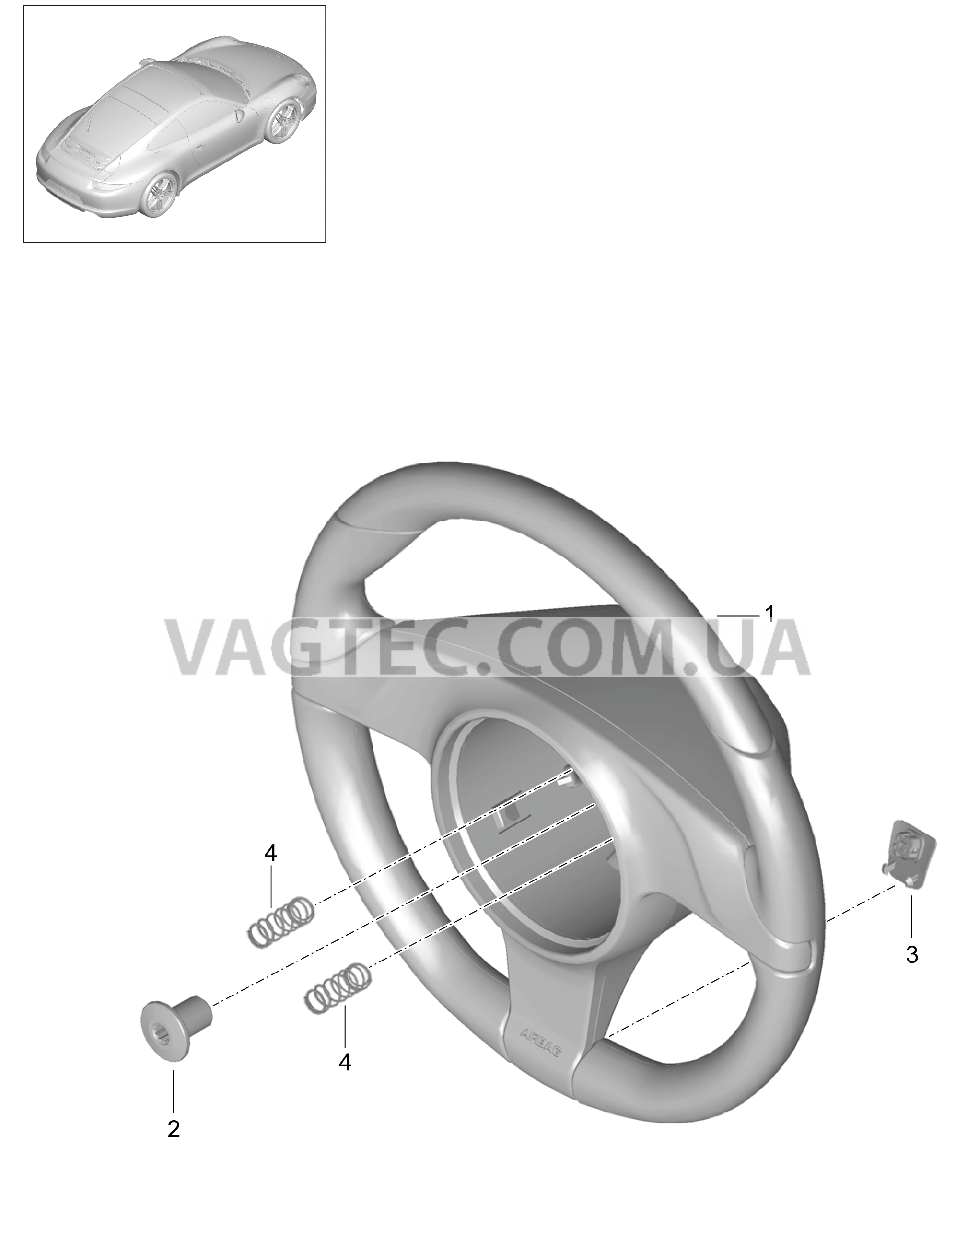 403-005 Рулевые колеса, Мкпп
						
						I487 для PORSCHE 911.Carrera 2012-2016